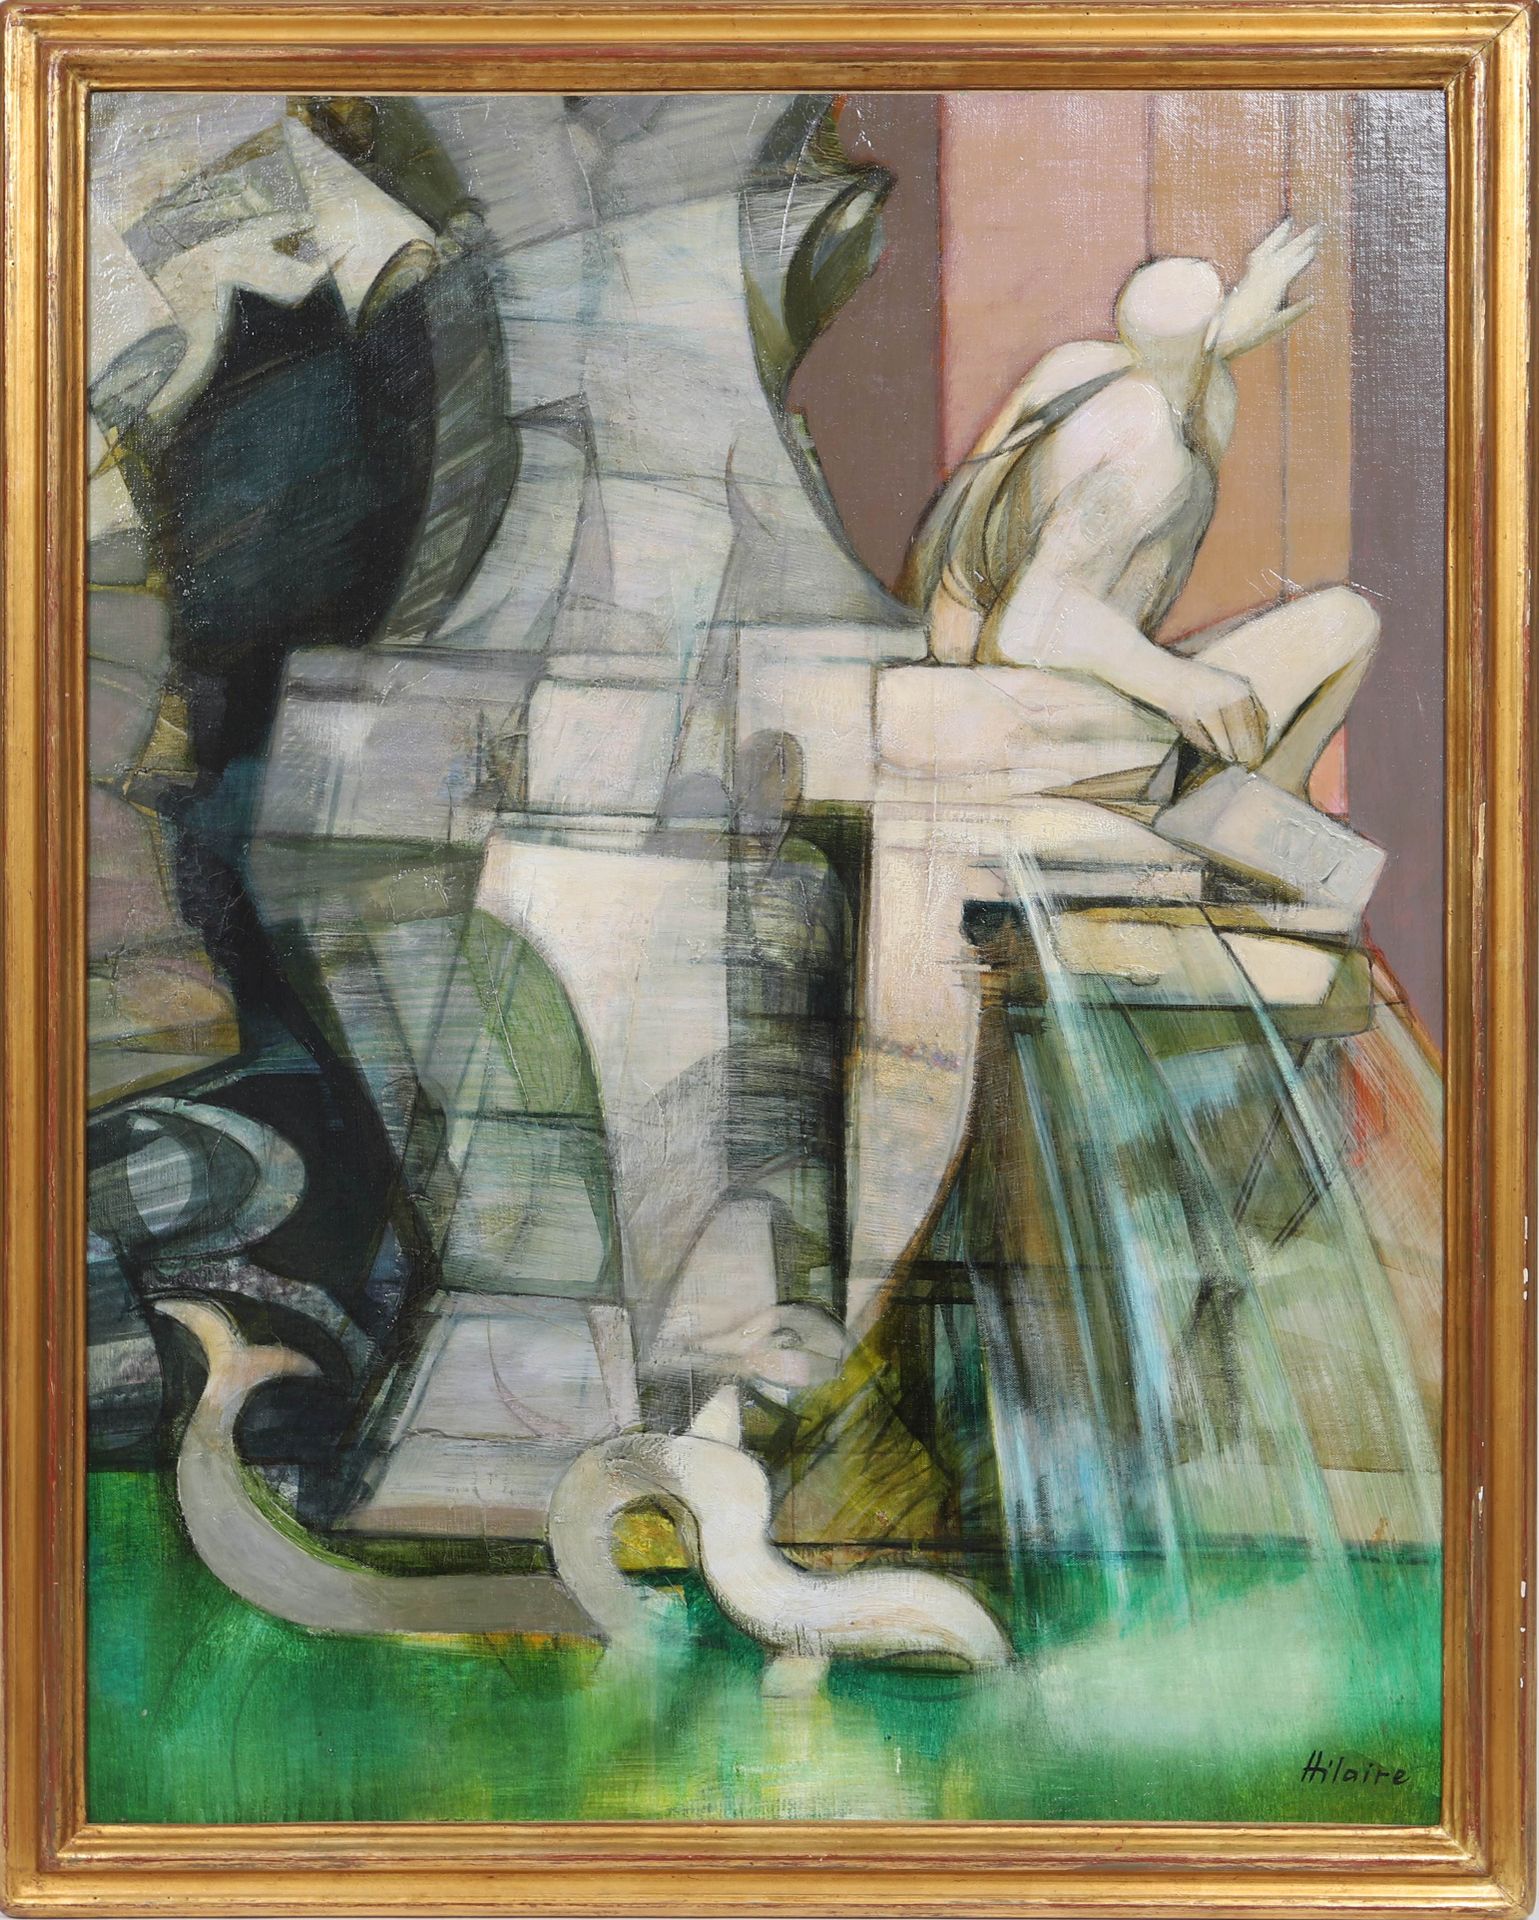 Null 卡米尔-希莱尔（1916-2004）的 "巴洛克喷泉"。

法国画家

布面油画，右下方有签名。

作品附有西蒙娜-希莱尔（艺术家的妻子）的证明，以及&hellip;